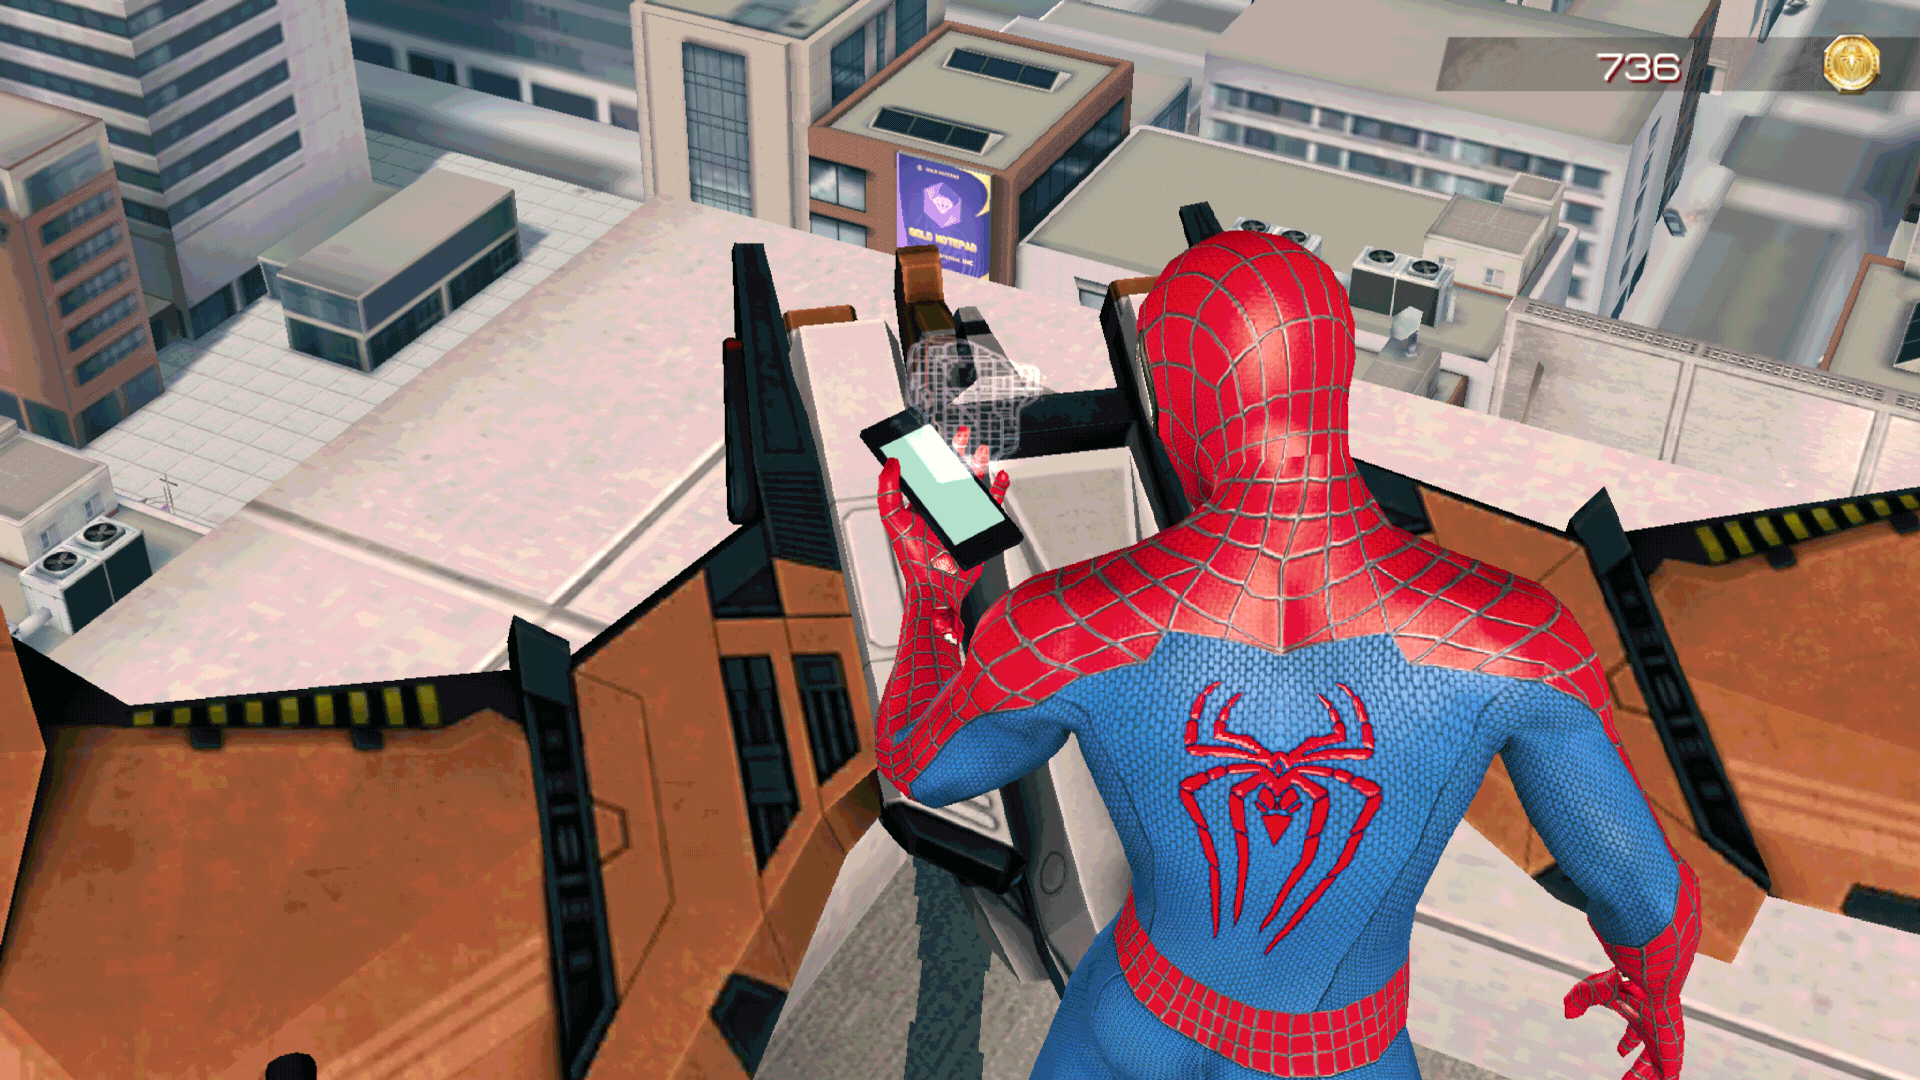 Правда человека паука. The amazing Spider-man (игра, 2012). Spider-man 2 (игра). Человек паук амазинг 1. The amazing Spider-man 2 (игра, 2014).